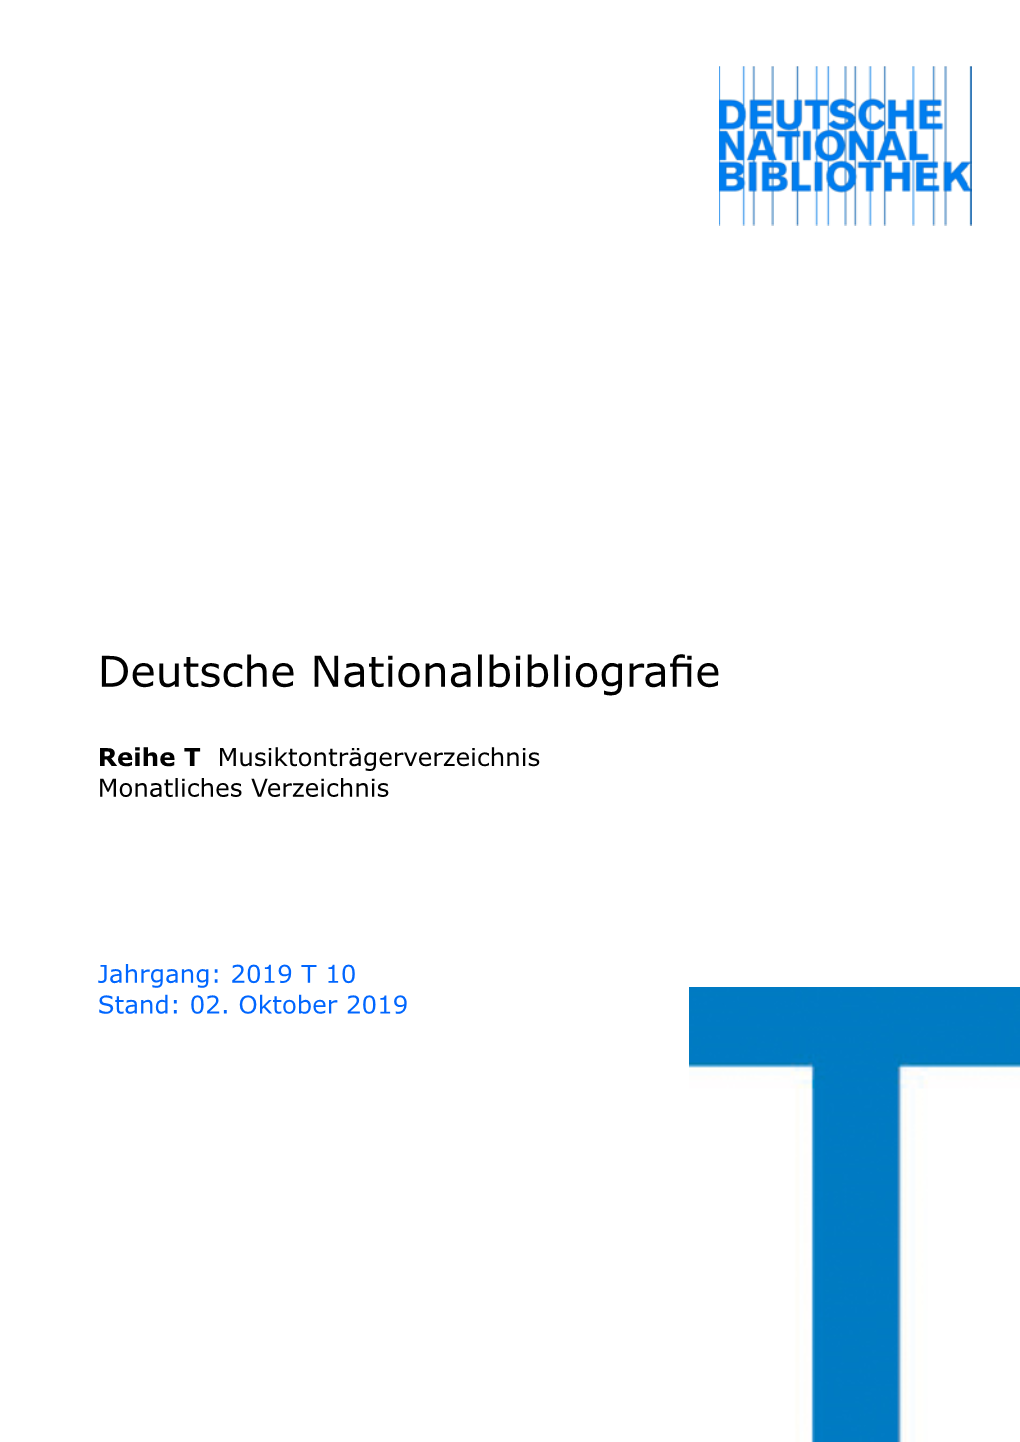 Deutsche Nationalbibliografie 2019 T 10